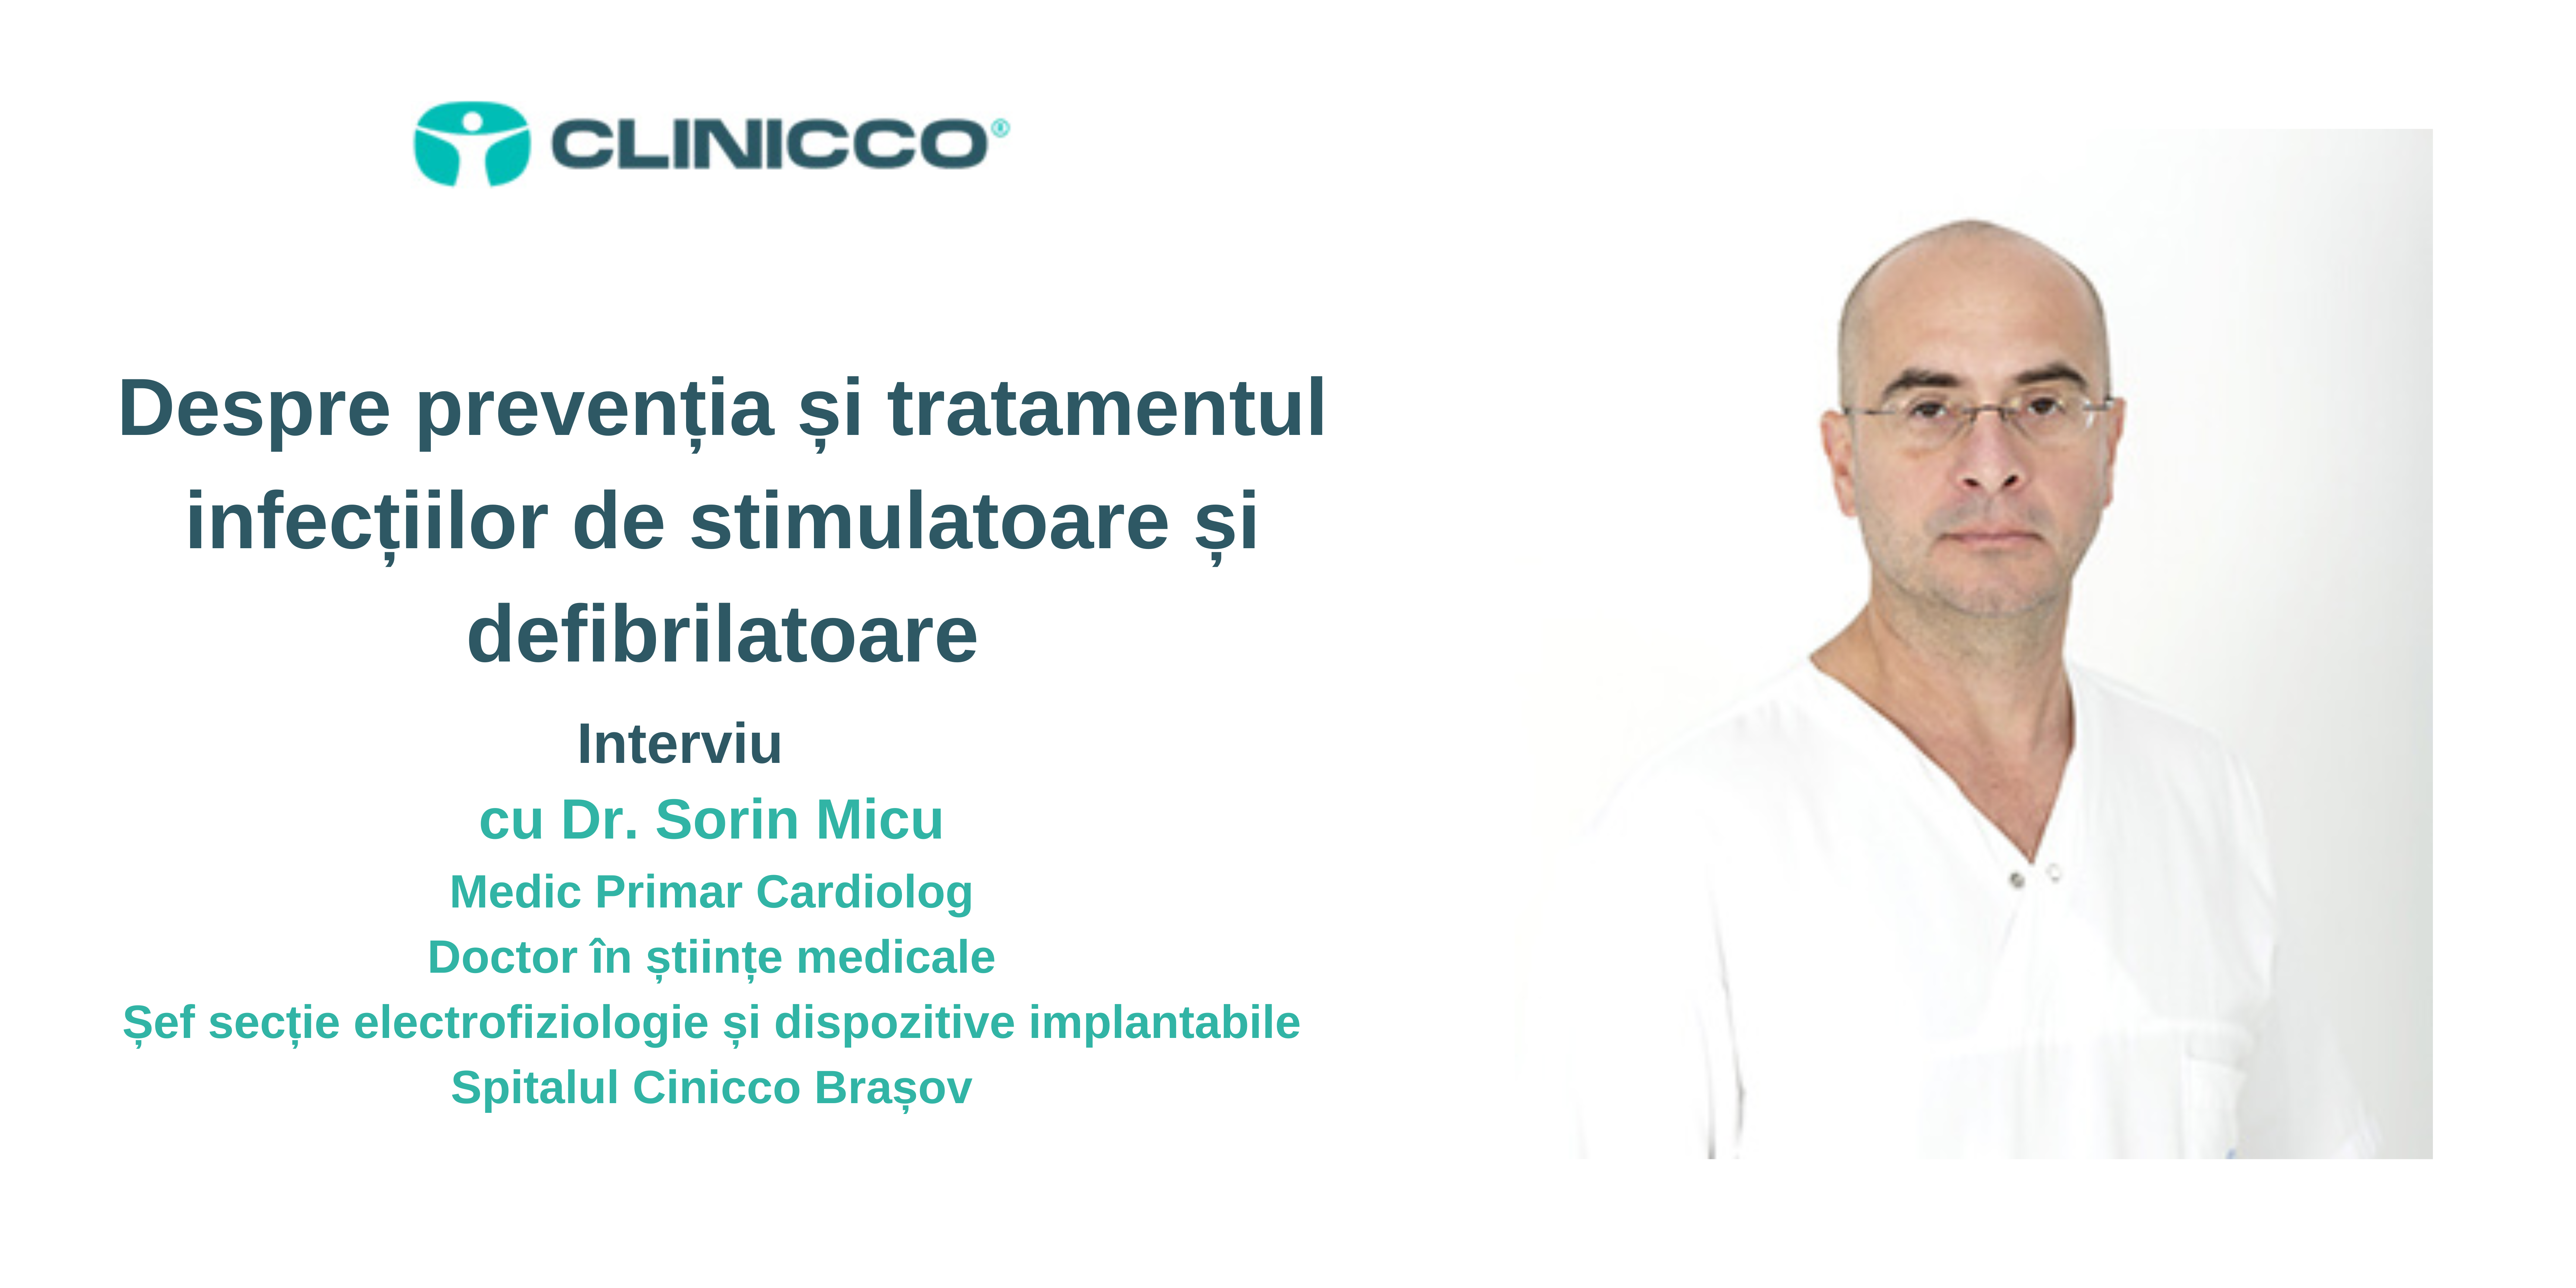 Despre prevenția și tratamentul infecțiilor de stimulatoare și defibrilatoare cu Dr. Sorin Micu